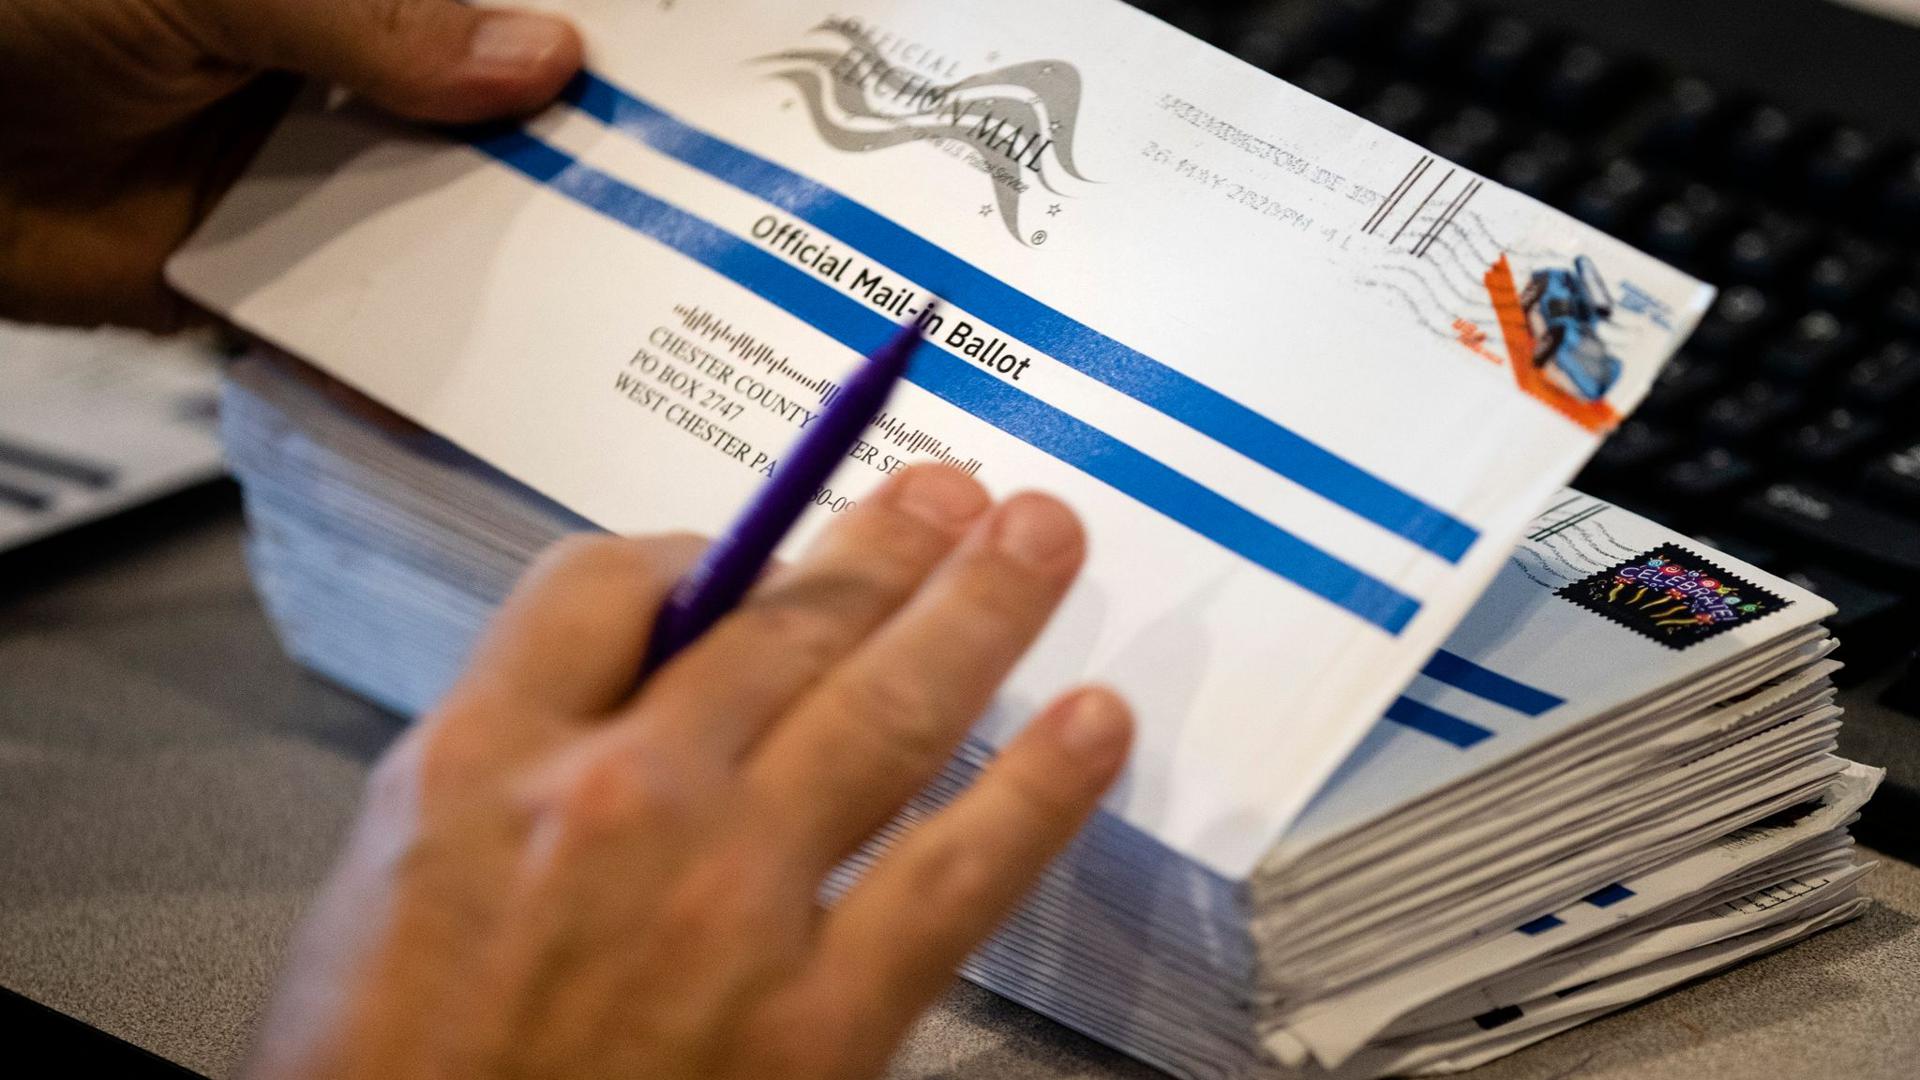 Briefwahlunterlagen in den USA. Präsident Trump behauptet immer wieder, dass mehr Briefwahl-Abstimmungen zu Wahlbetrug führen werden.